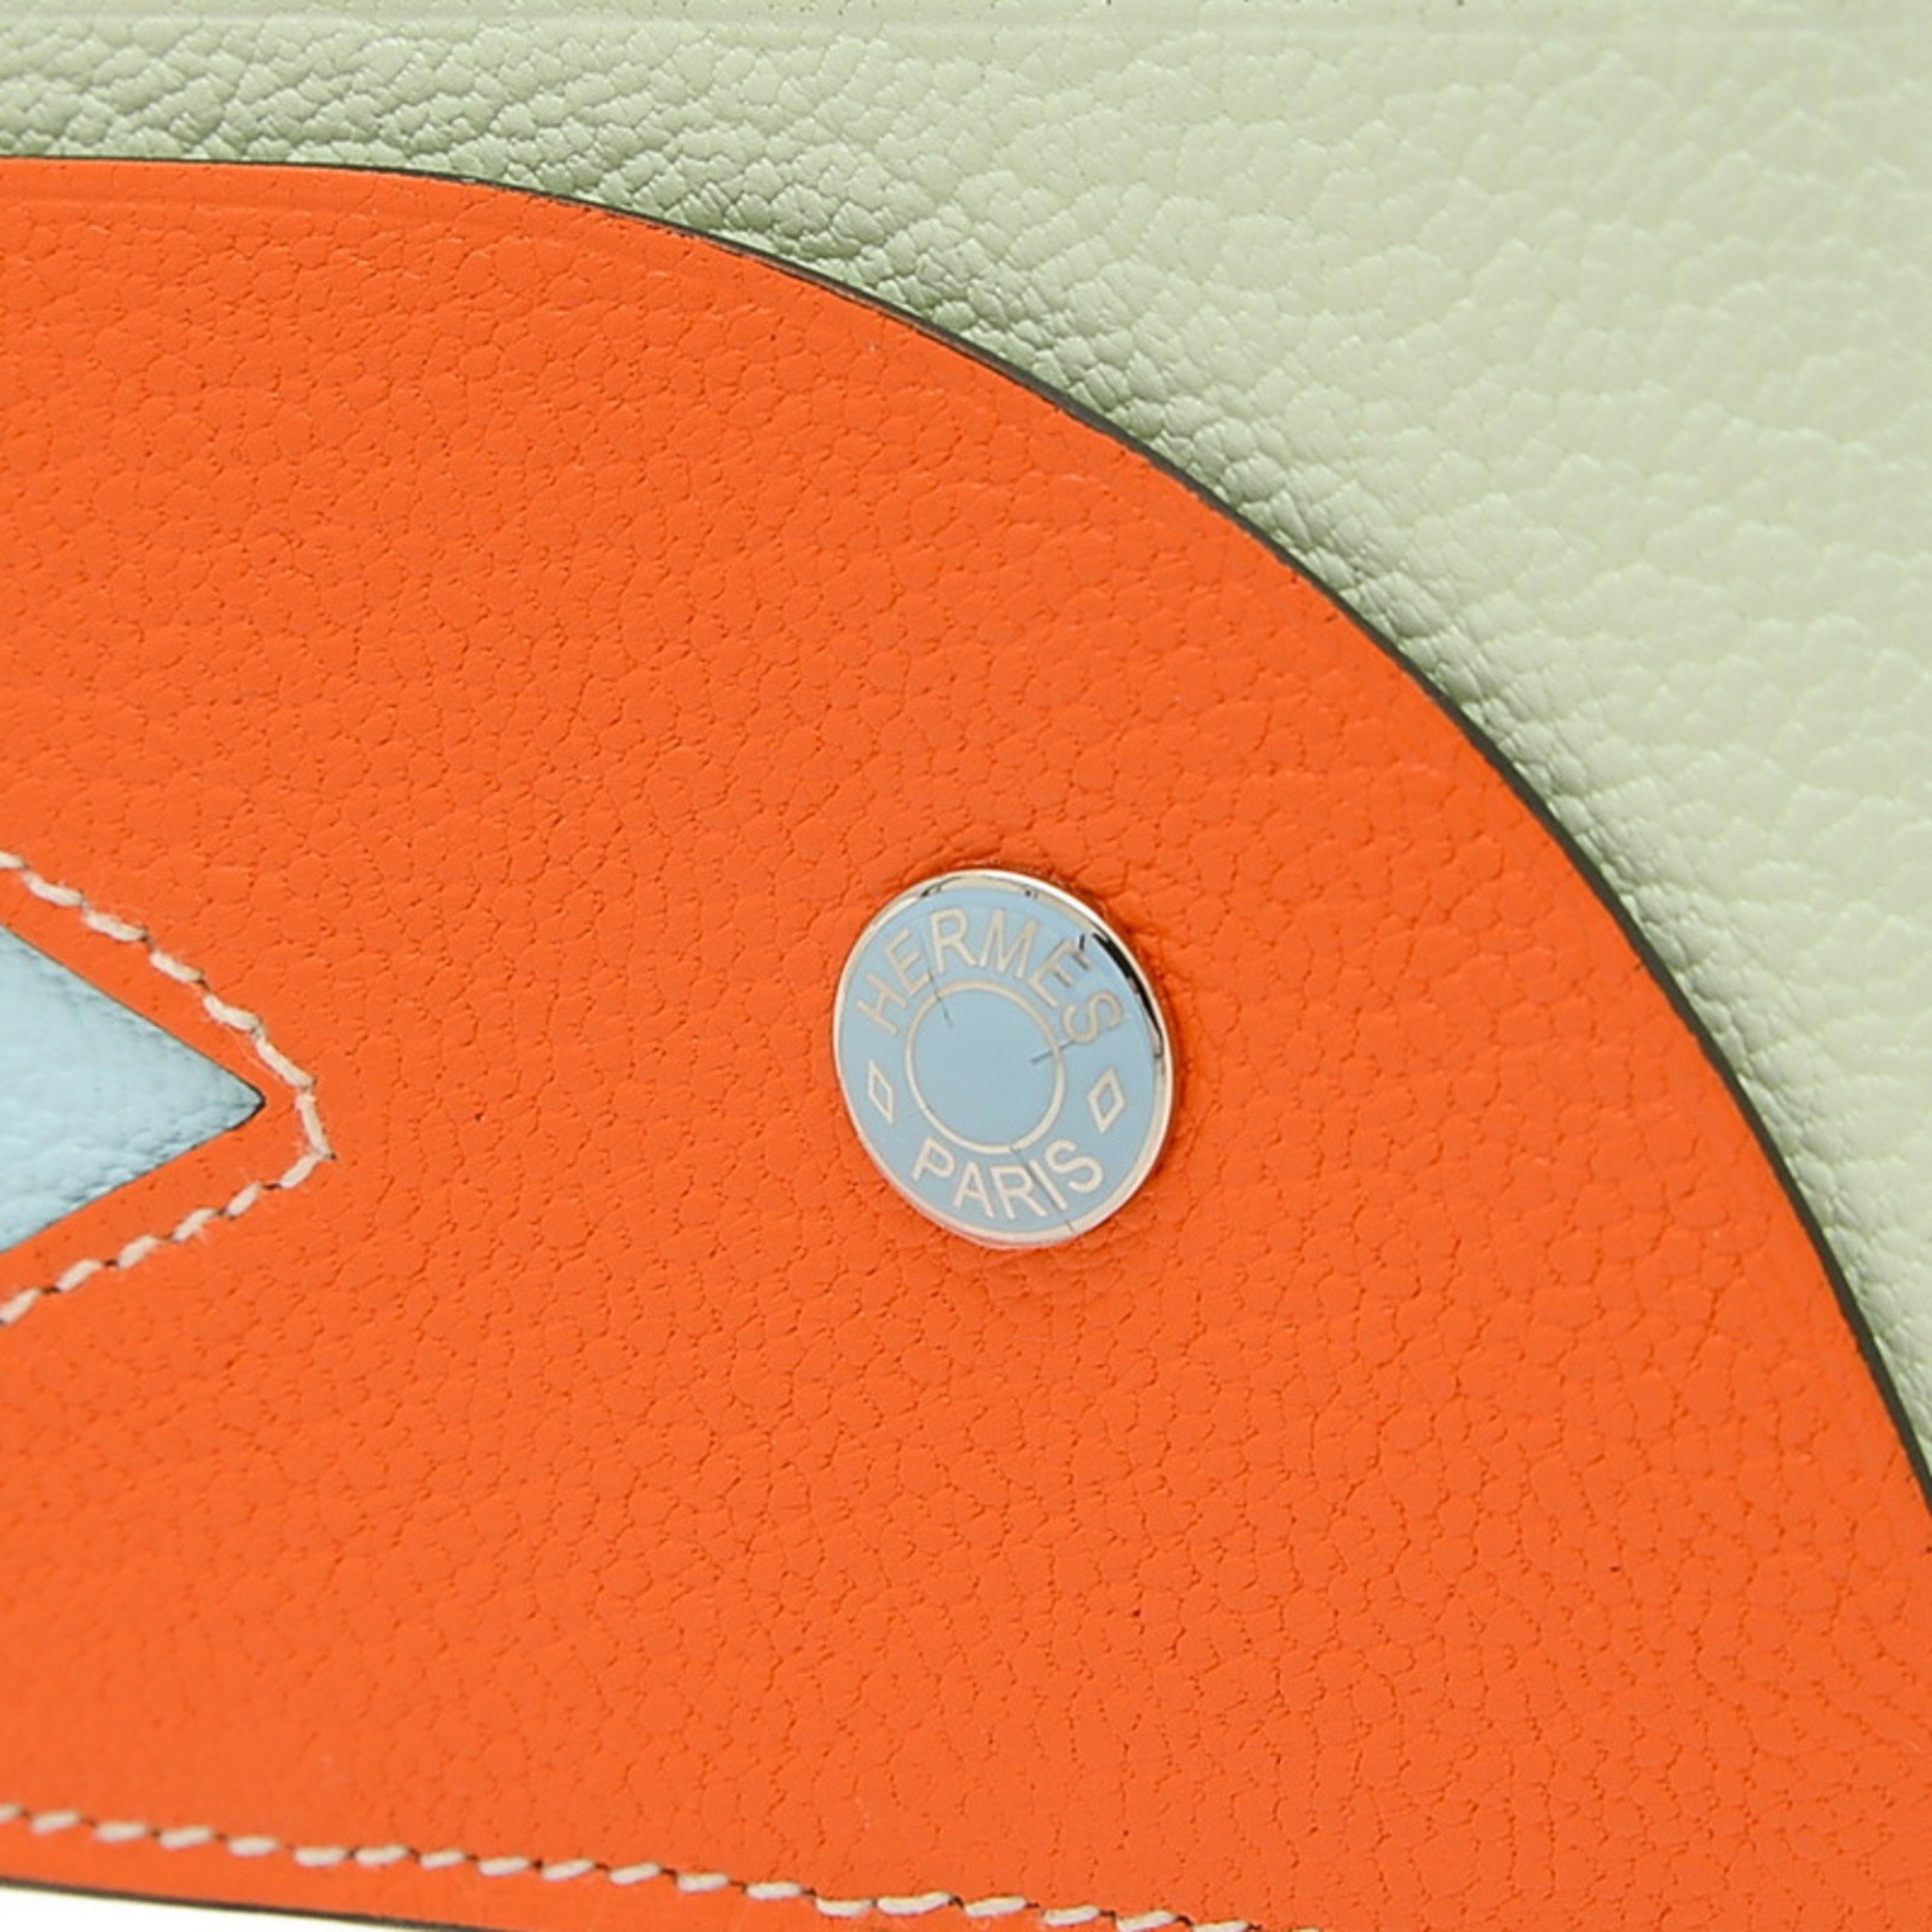 Hermes Poisson Fish Card Holder Chevre Orange Vert Fizz B Engraved